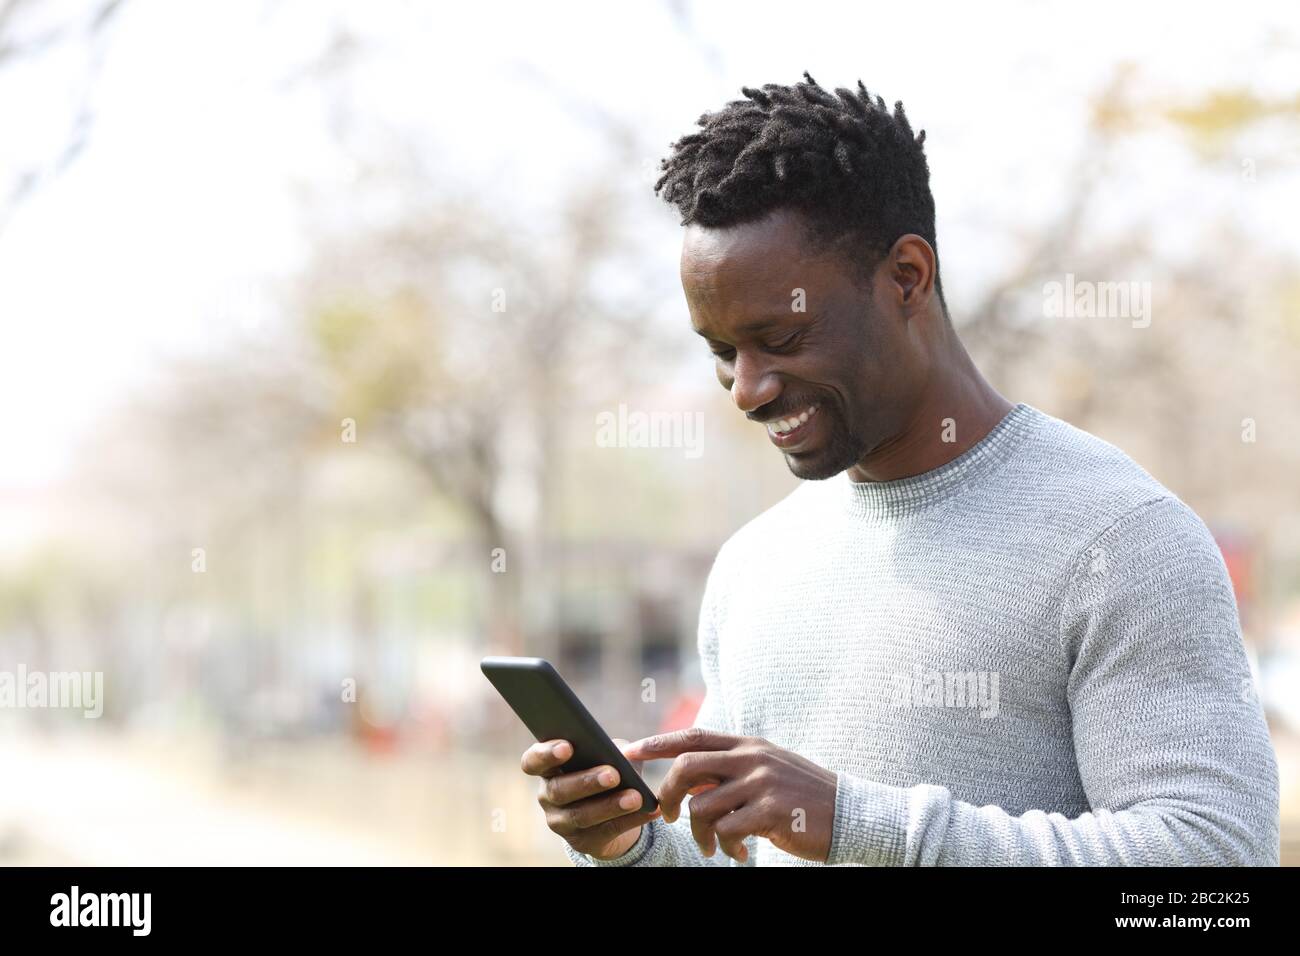 Glücklicher schwarzer Mann mit Smartphone, der einen sonnigen Tag in einem Park spaziert Stockfoto